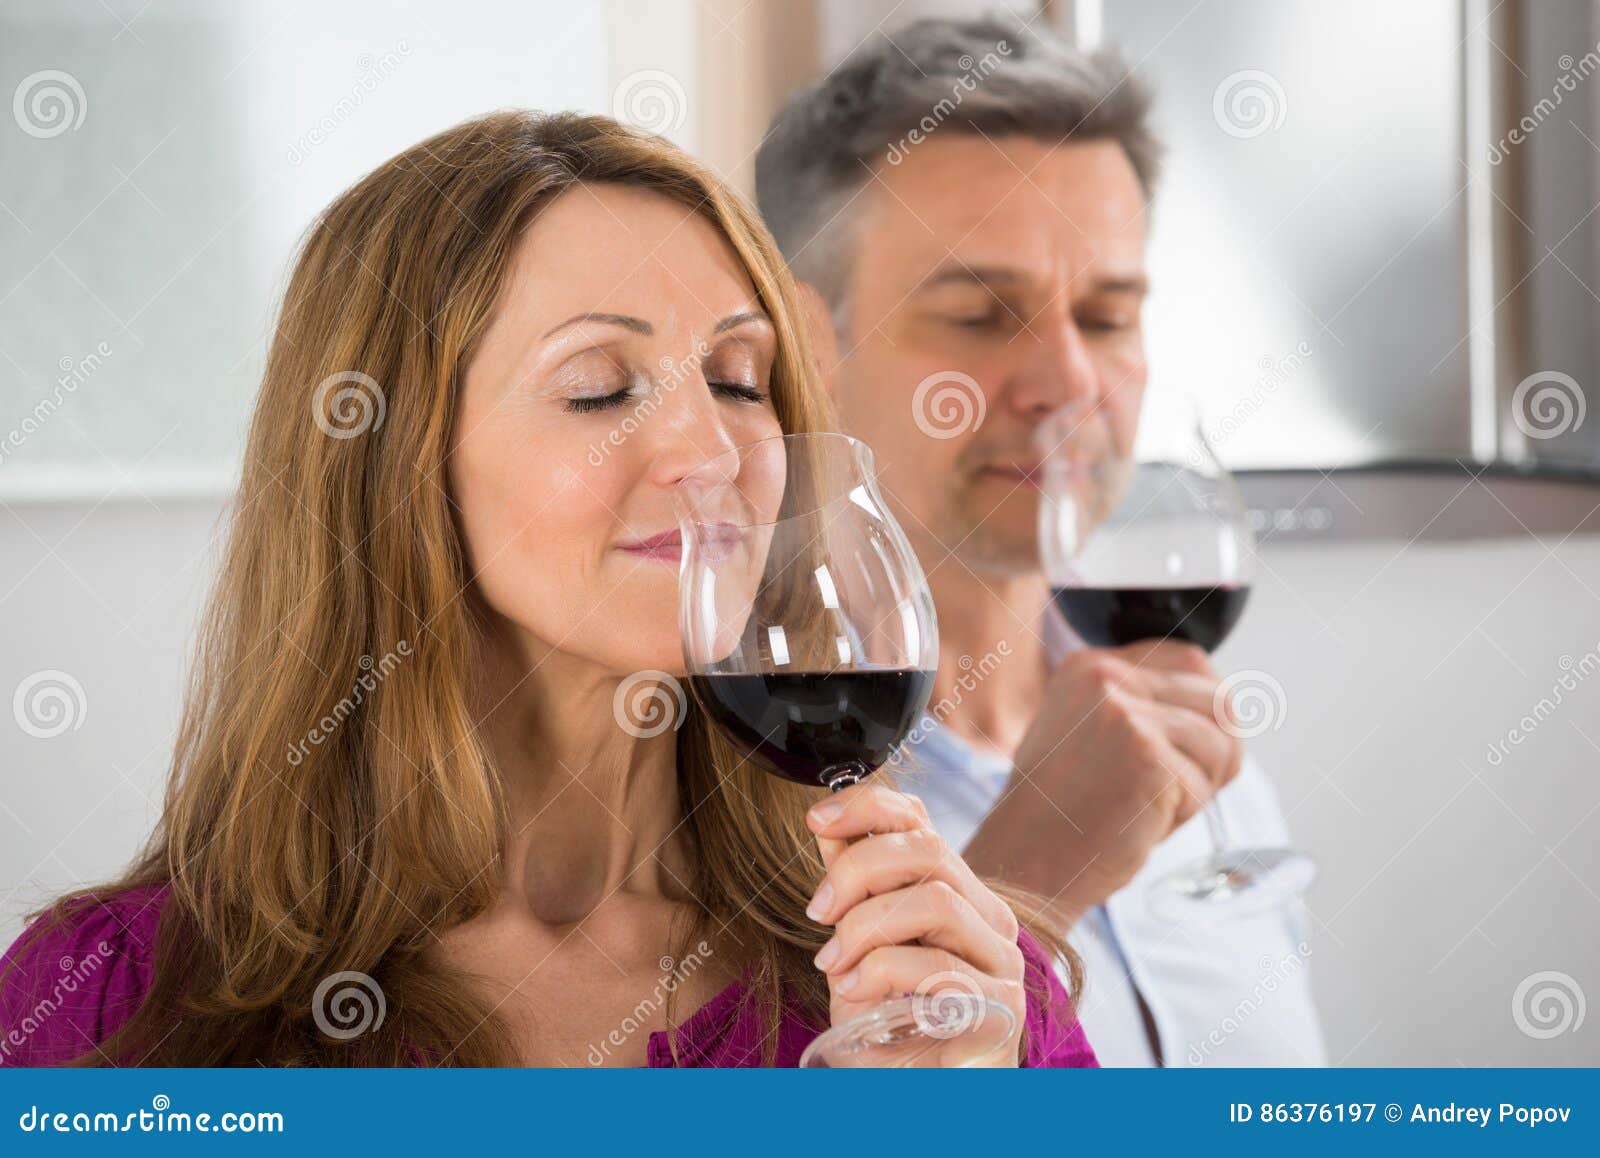 Муж вине. Пара дегустация вина. Мужчина и женщина дегустируют вино. Дегустатор вина. Девушка дегустирует вино.